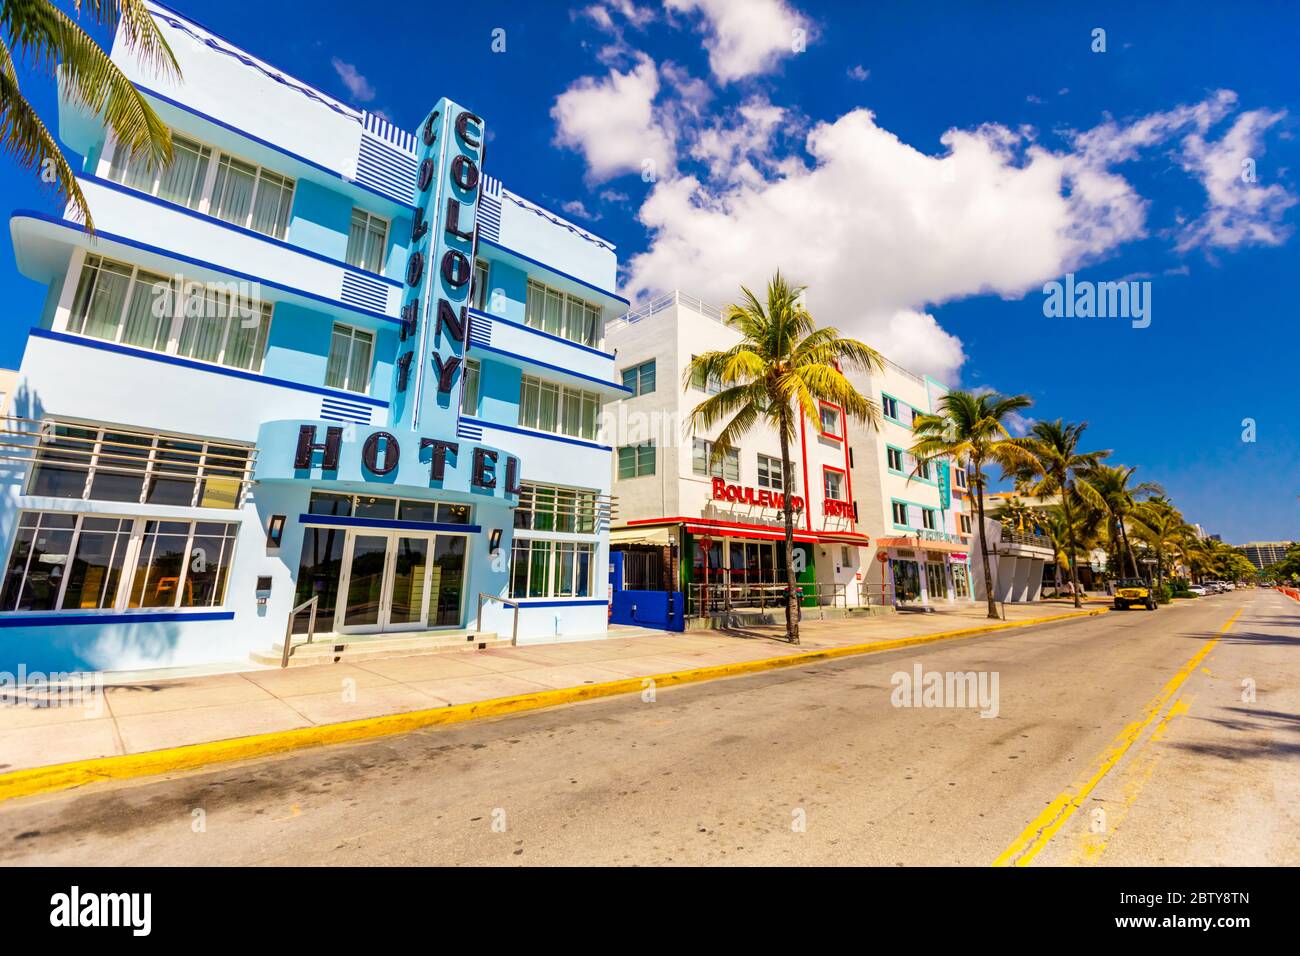 Der meist gepackte Deco Drive in South Beach Miami liegt während der COVID-19 Viruspandemie, Miami, Florida, Vereinigte Staaten von Amerika, North Amer, leer Stockfoto